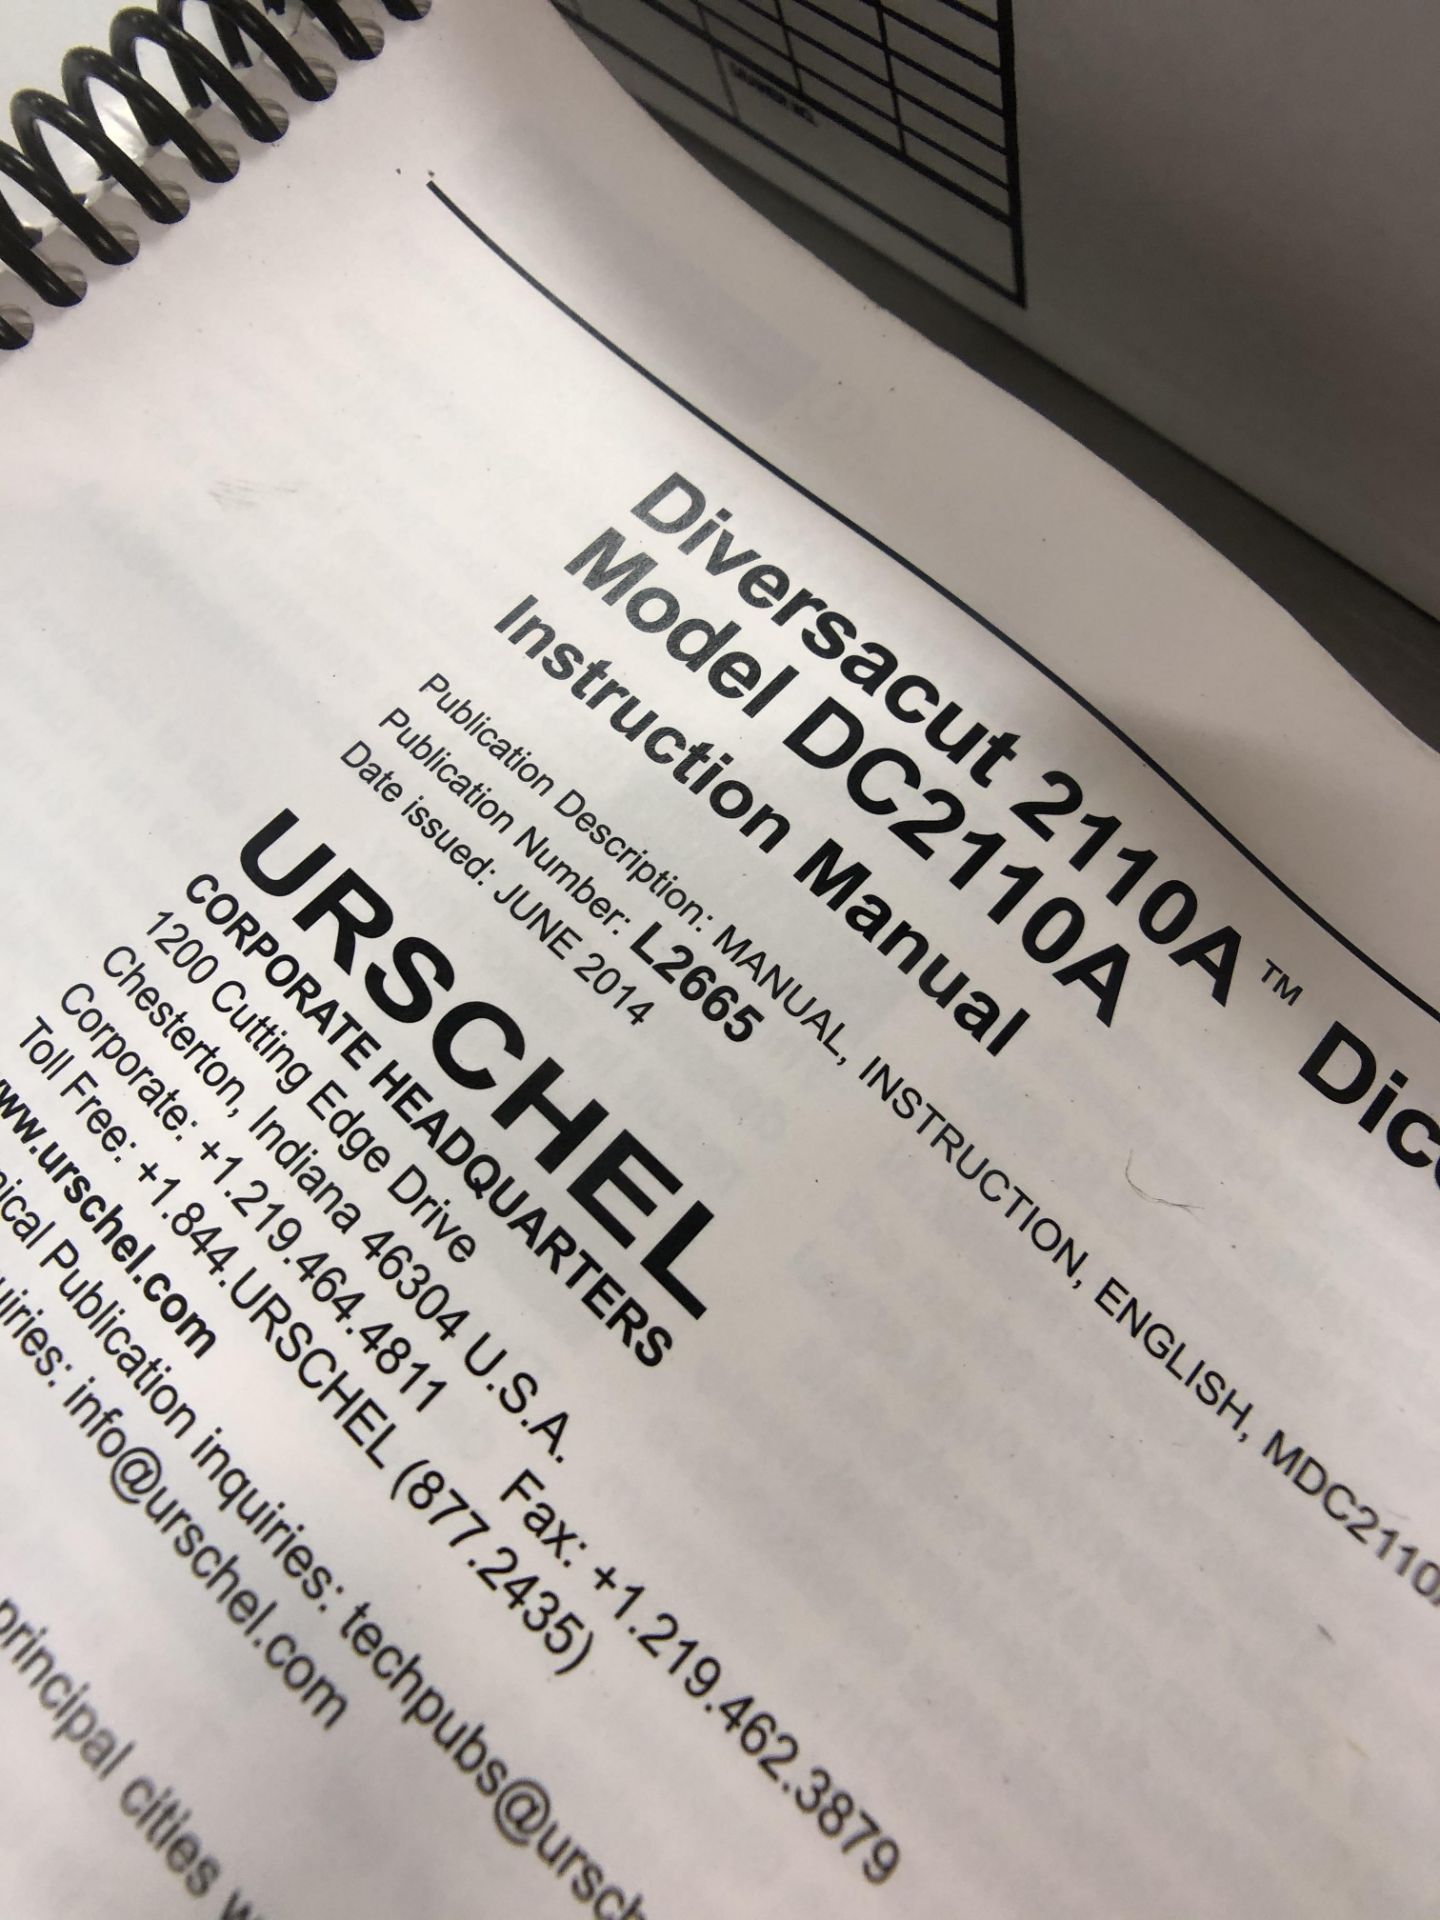 URSCHEL DIVERSACUT DICER MODEL 2110A, S/N 924, 5HP, 1460 RPM - Image 5 of 13